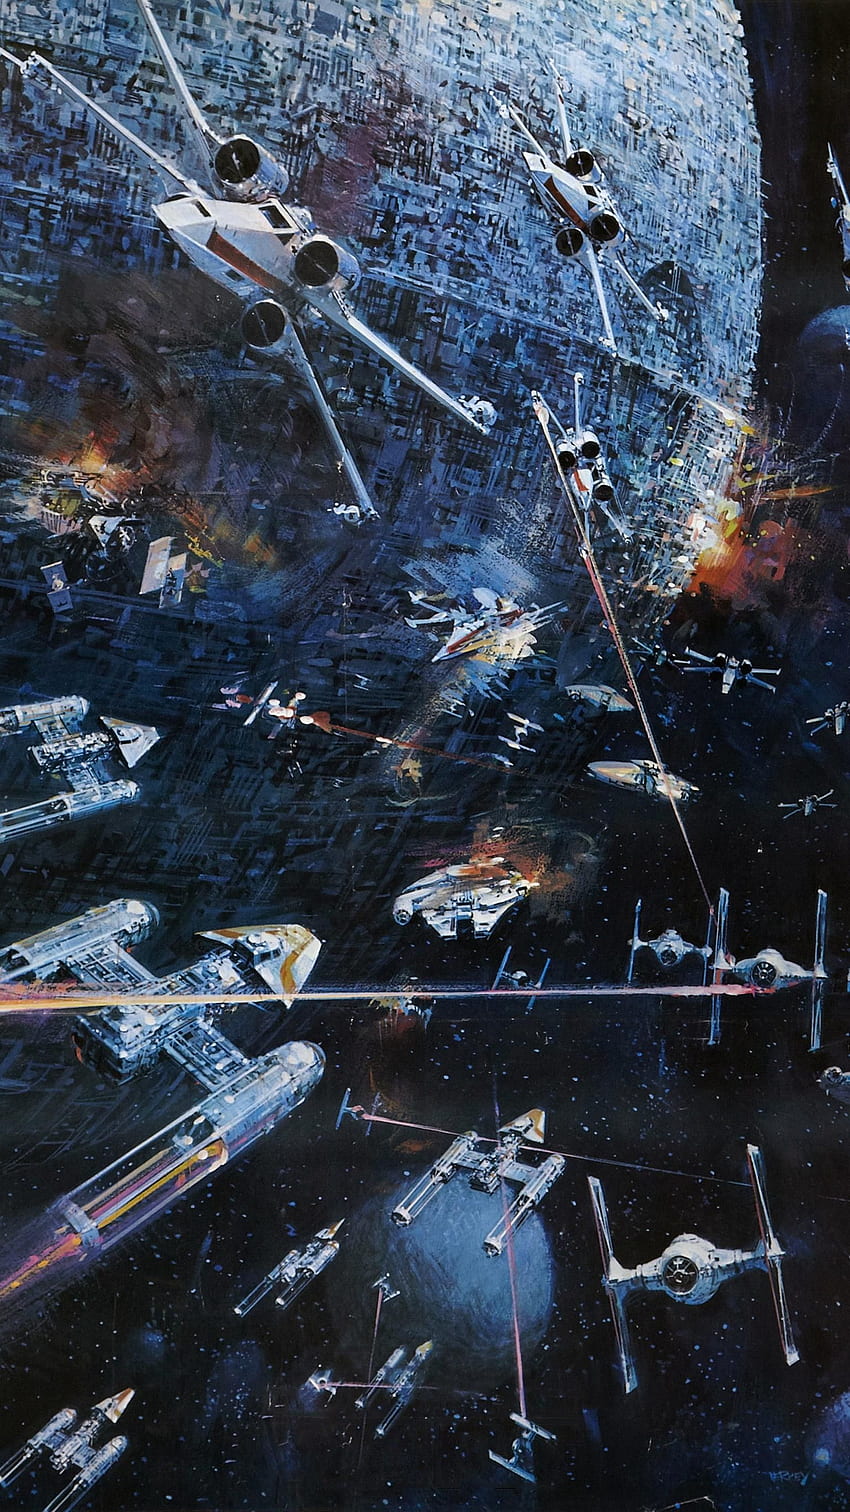 พื้นหลังโทรศัพท์ Star Wars 1977 แนวคิด Star wars [] สำหรับมือถือและแท็บเล็ตของคุณ สำรวจพื้นหลังอวกาศของ Star Wars ในปี 1977 พื้นหลังอวกาศ Star Wars ปี 1977, Cool Star Wars วอลล์เปเปอร์โทรศัพท์ HD